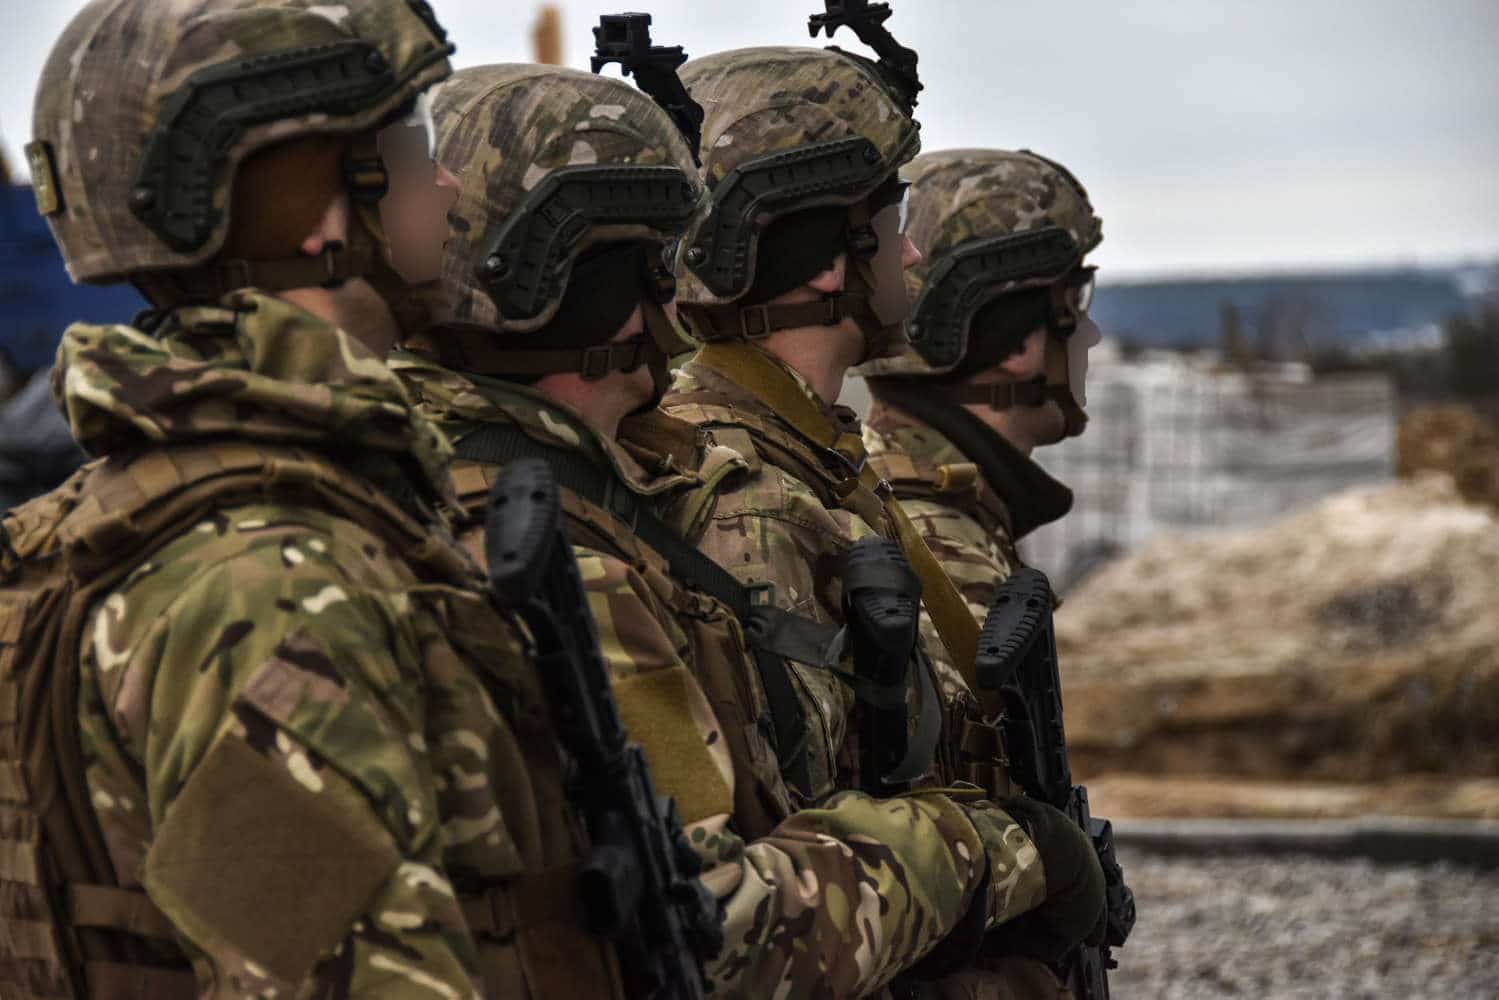 Вперше в історії український спецпідрозділ пройшов сертифікацію НАТО - ЗМІ 3